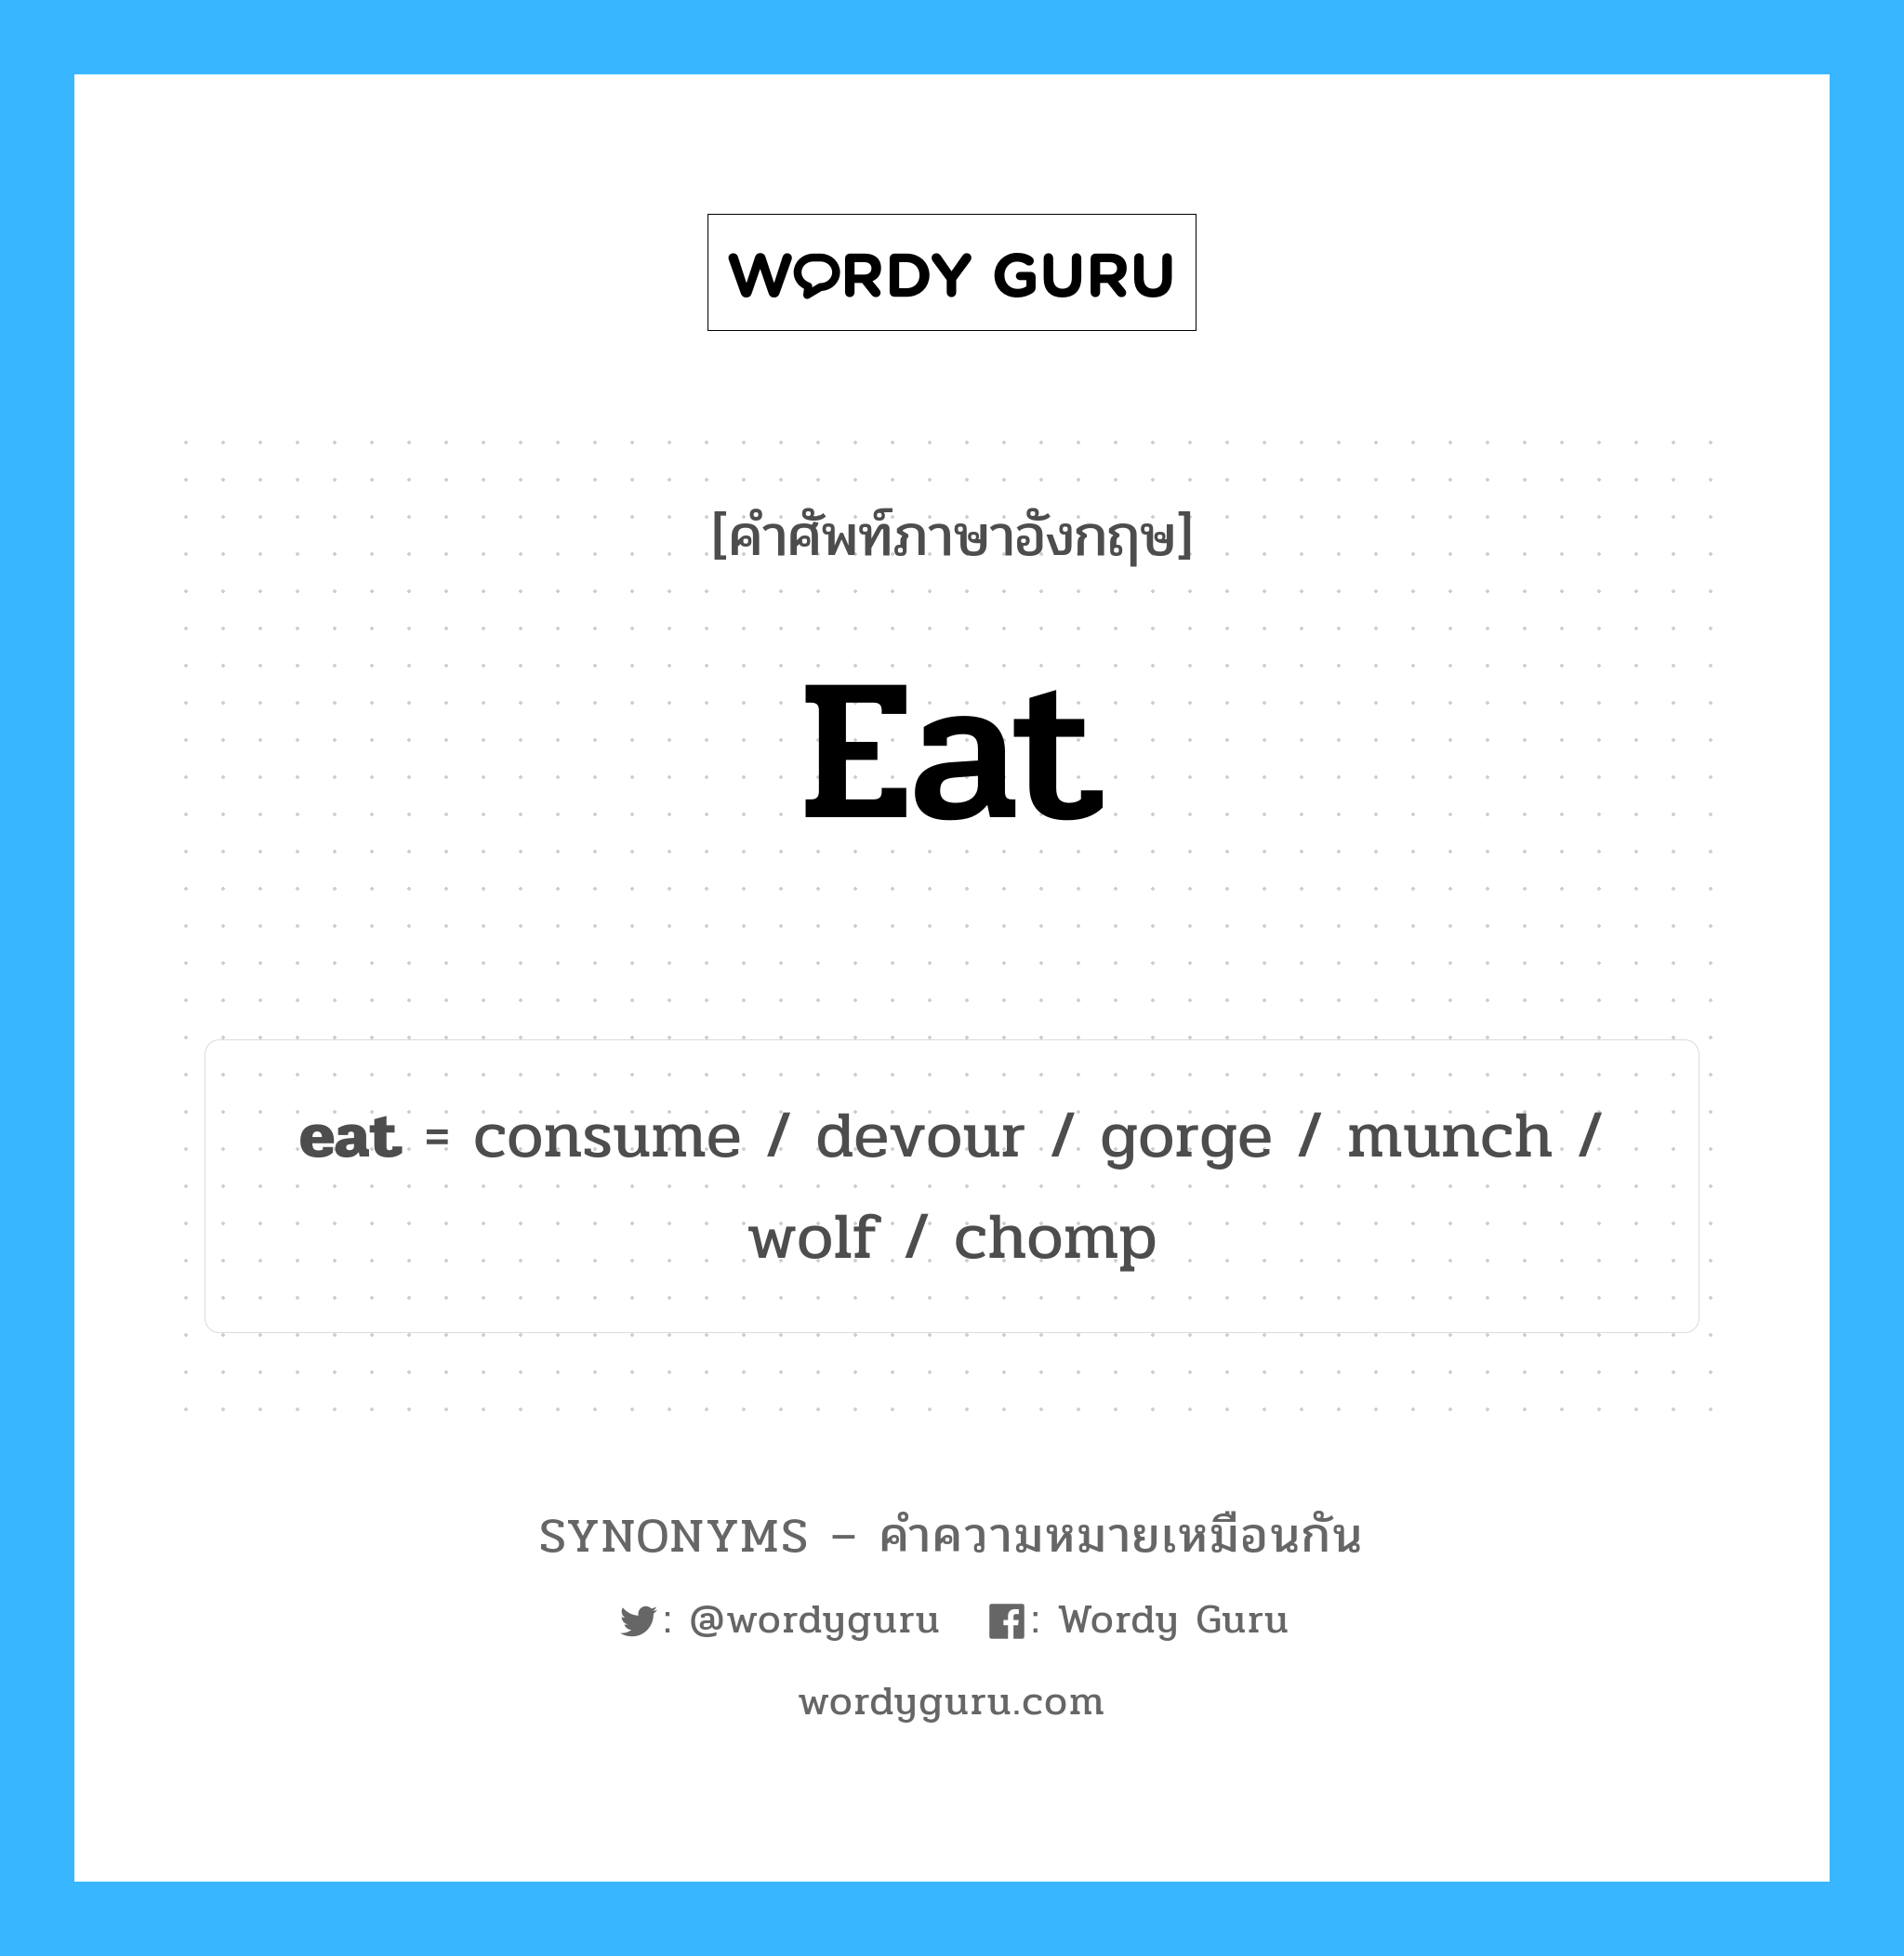 devour เป็นหนึ่งใน eat และมีคำอื่น ๆ อีกดังนี้, คำศัพท์ภาษาอังกฤษ devour ความหมายคล้ายกันกับ eat แปลว่า กิน หมวด eat